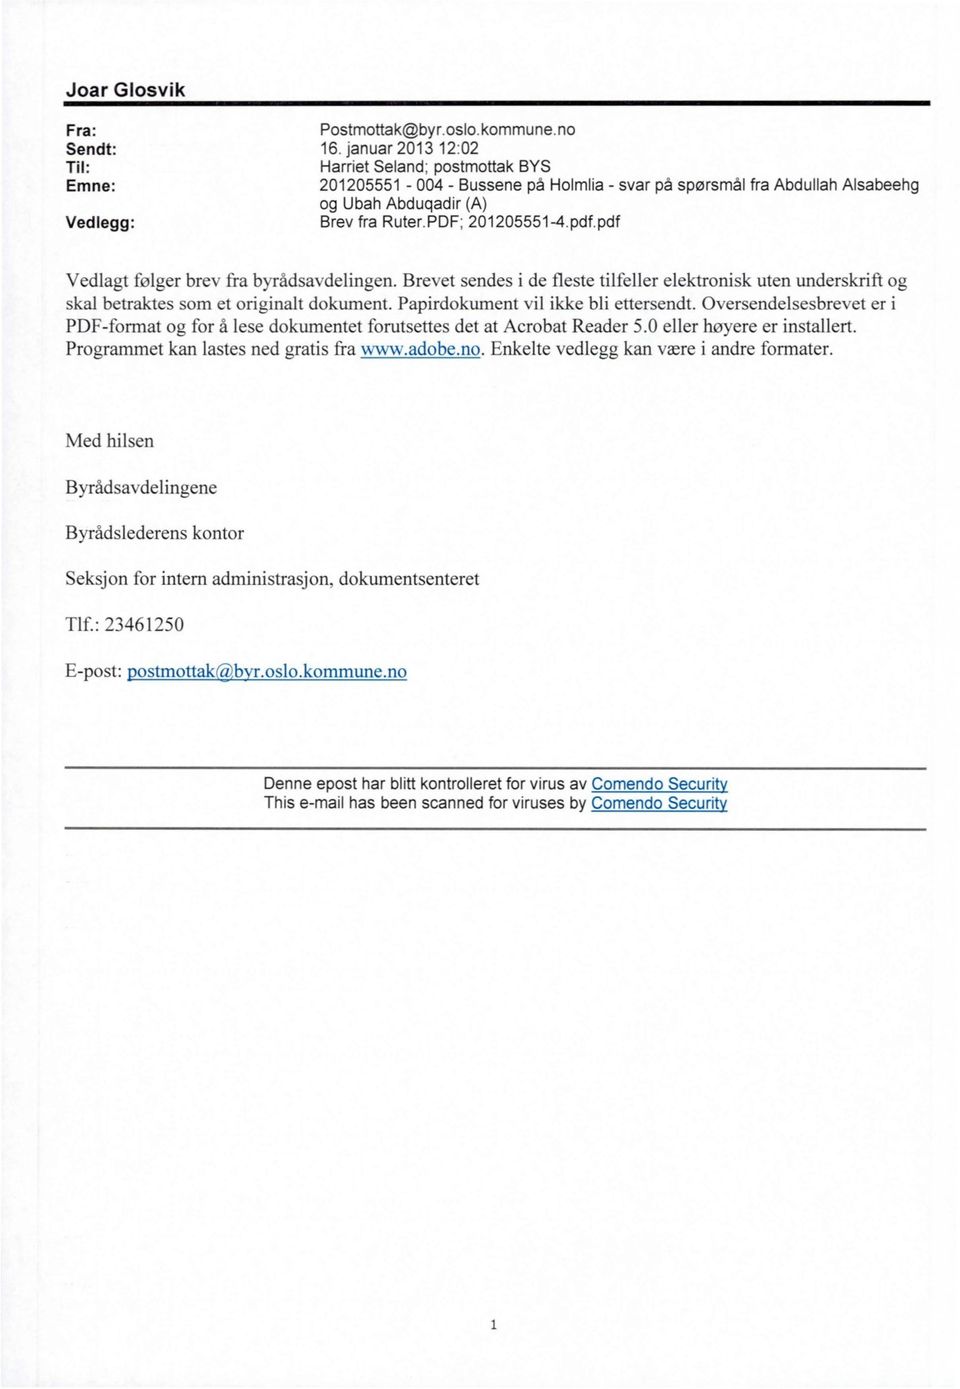 pdf.pdf Vedlagt følger brev fra byrådsavdelingen. Brevet sendes i de fleste tilfeller elektronisk uten underskrift og skal betraktes som et originalt dokument. Papirdokument vil ikke bli ettersendt.